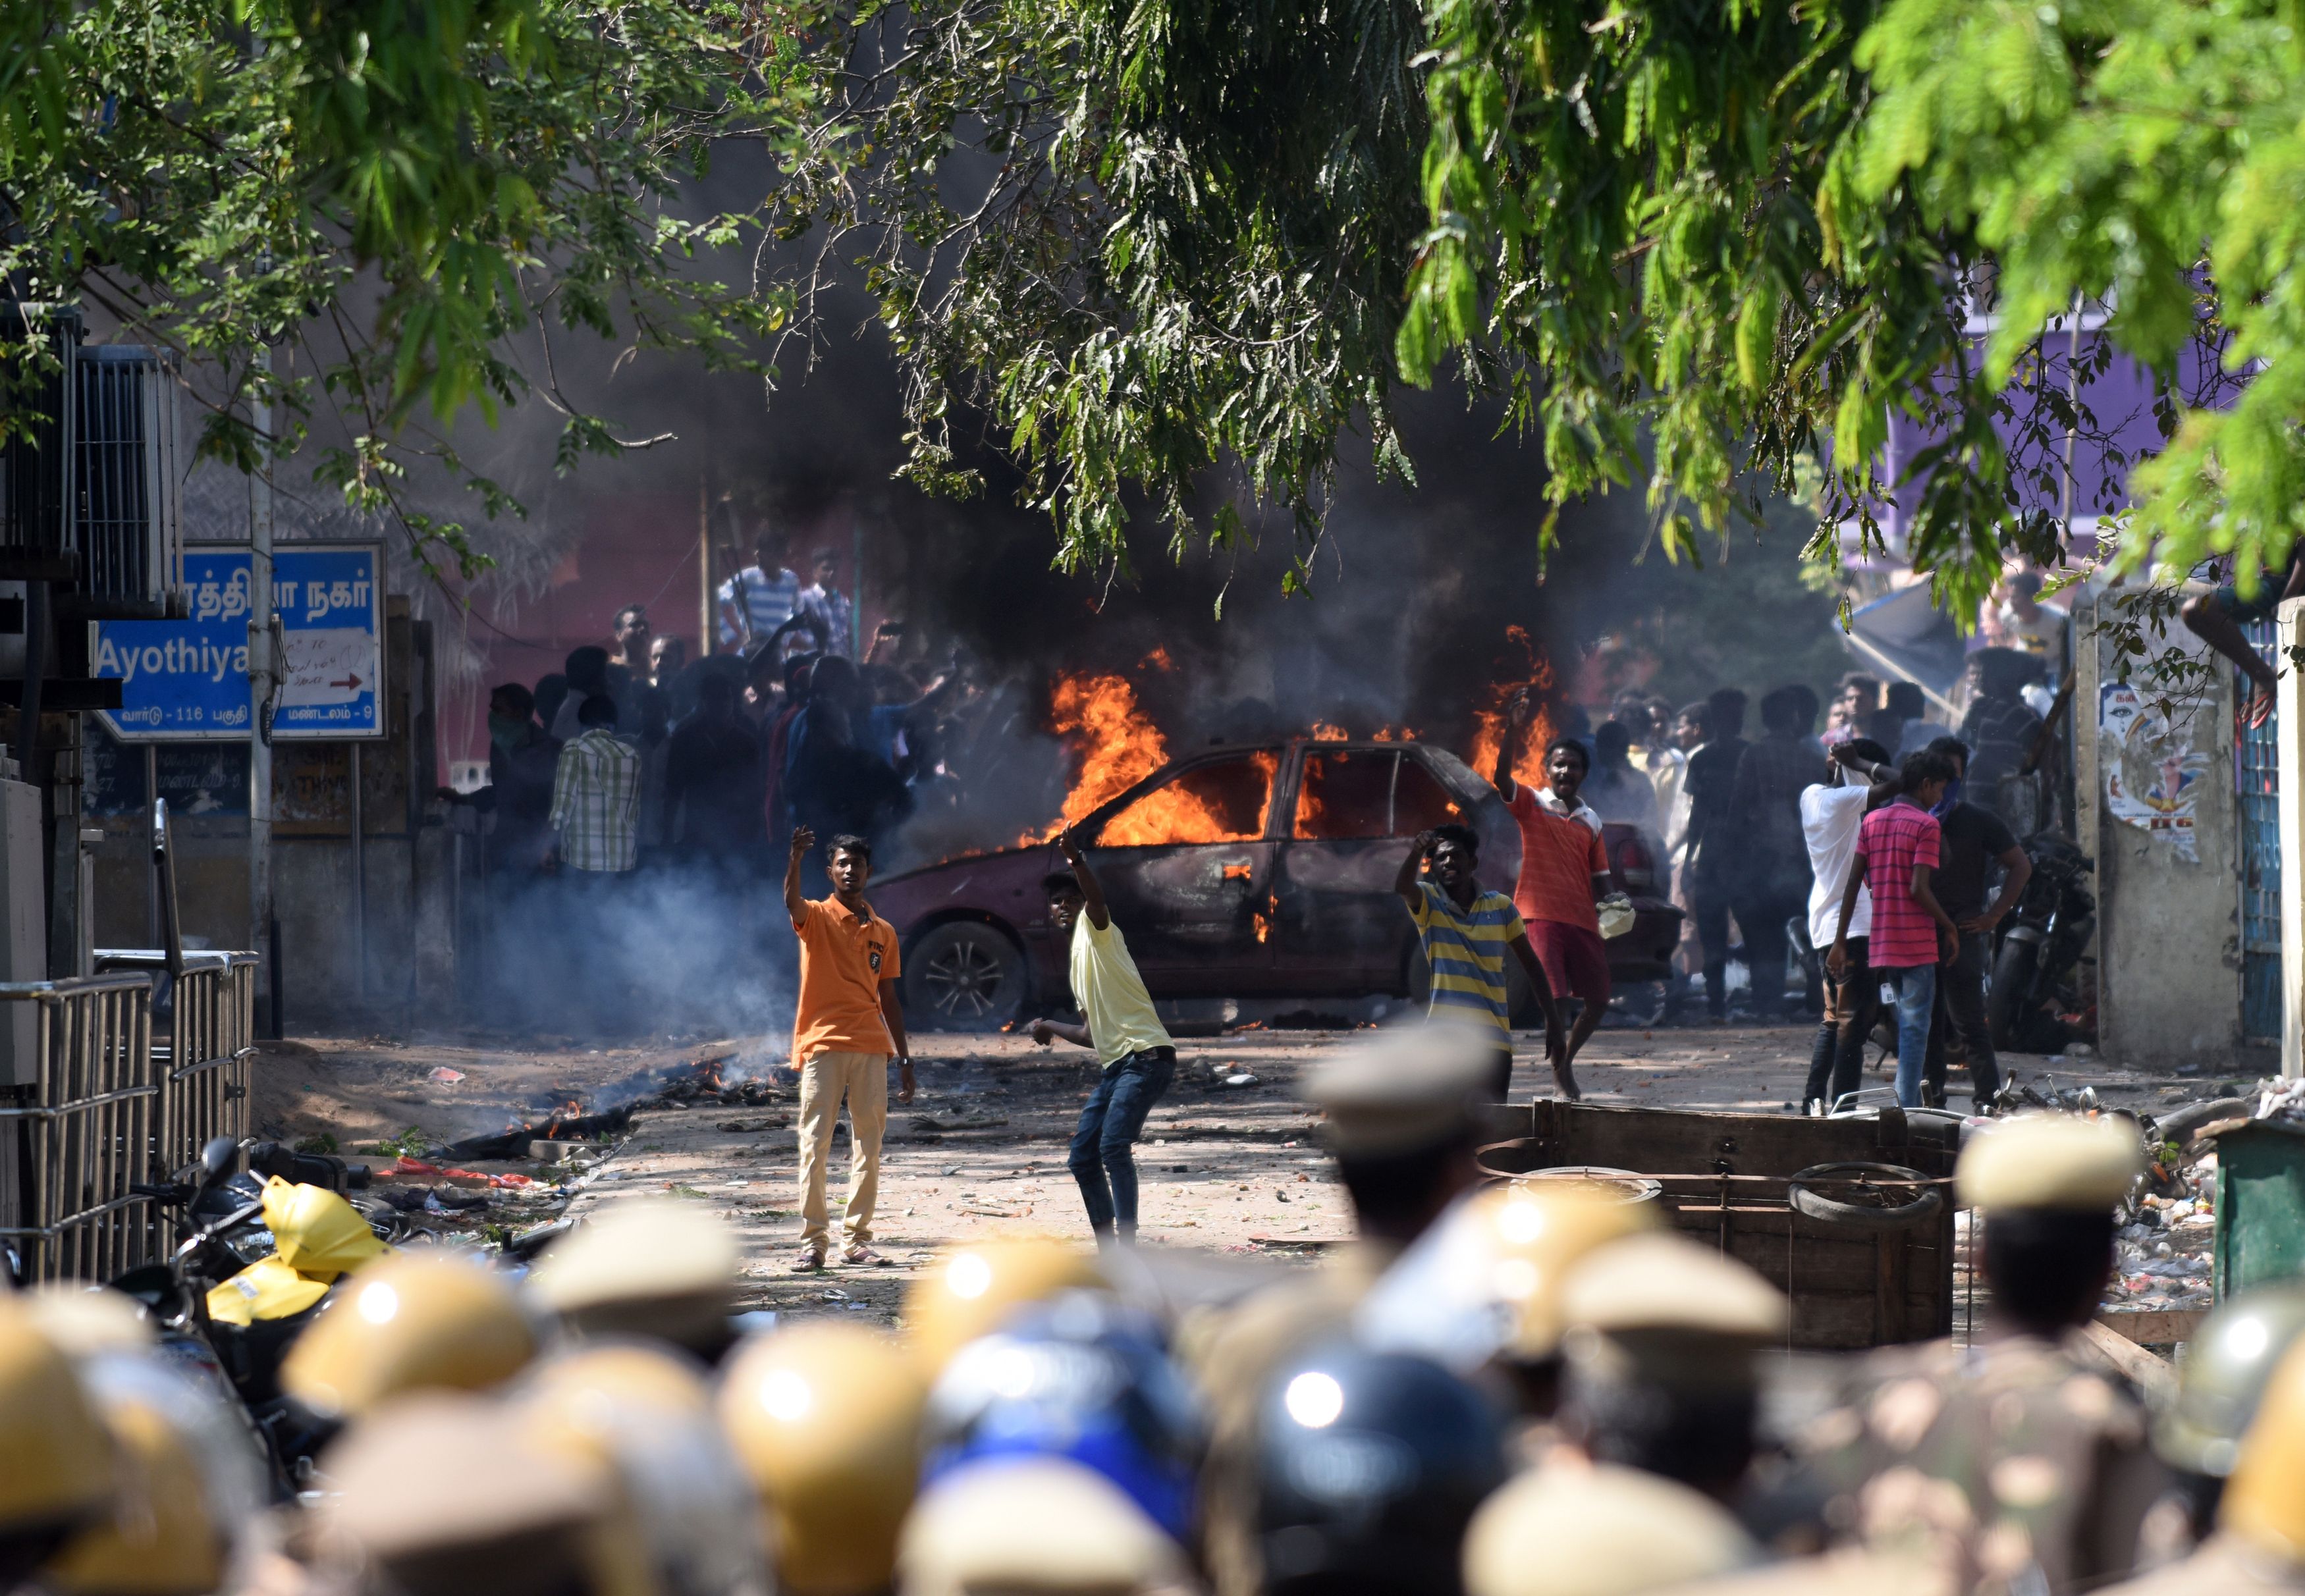 المحتجون على حظر مصارعة الثيران فى الهند يشعلون النار فى السيارات